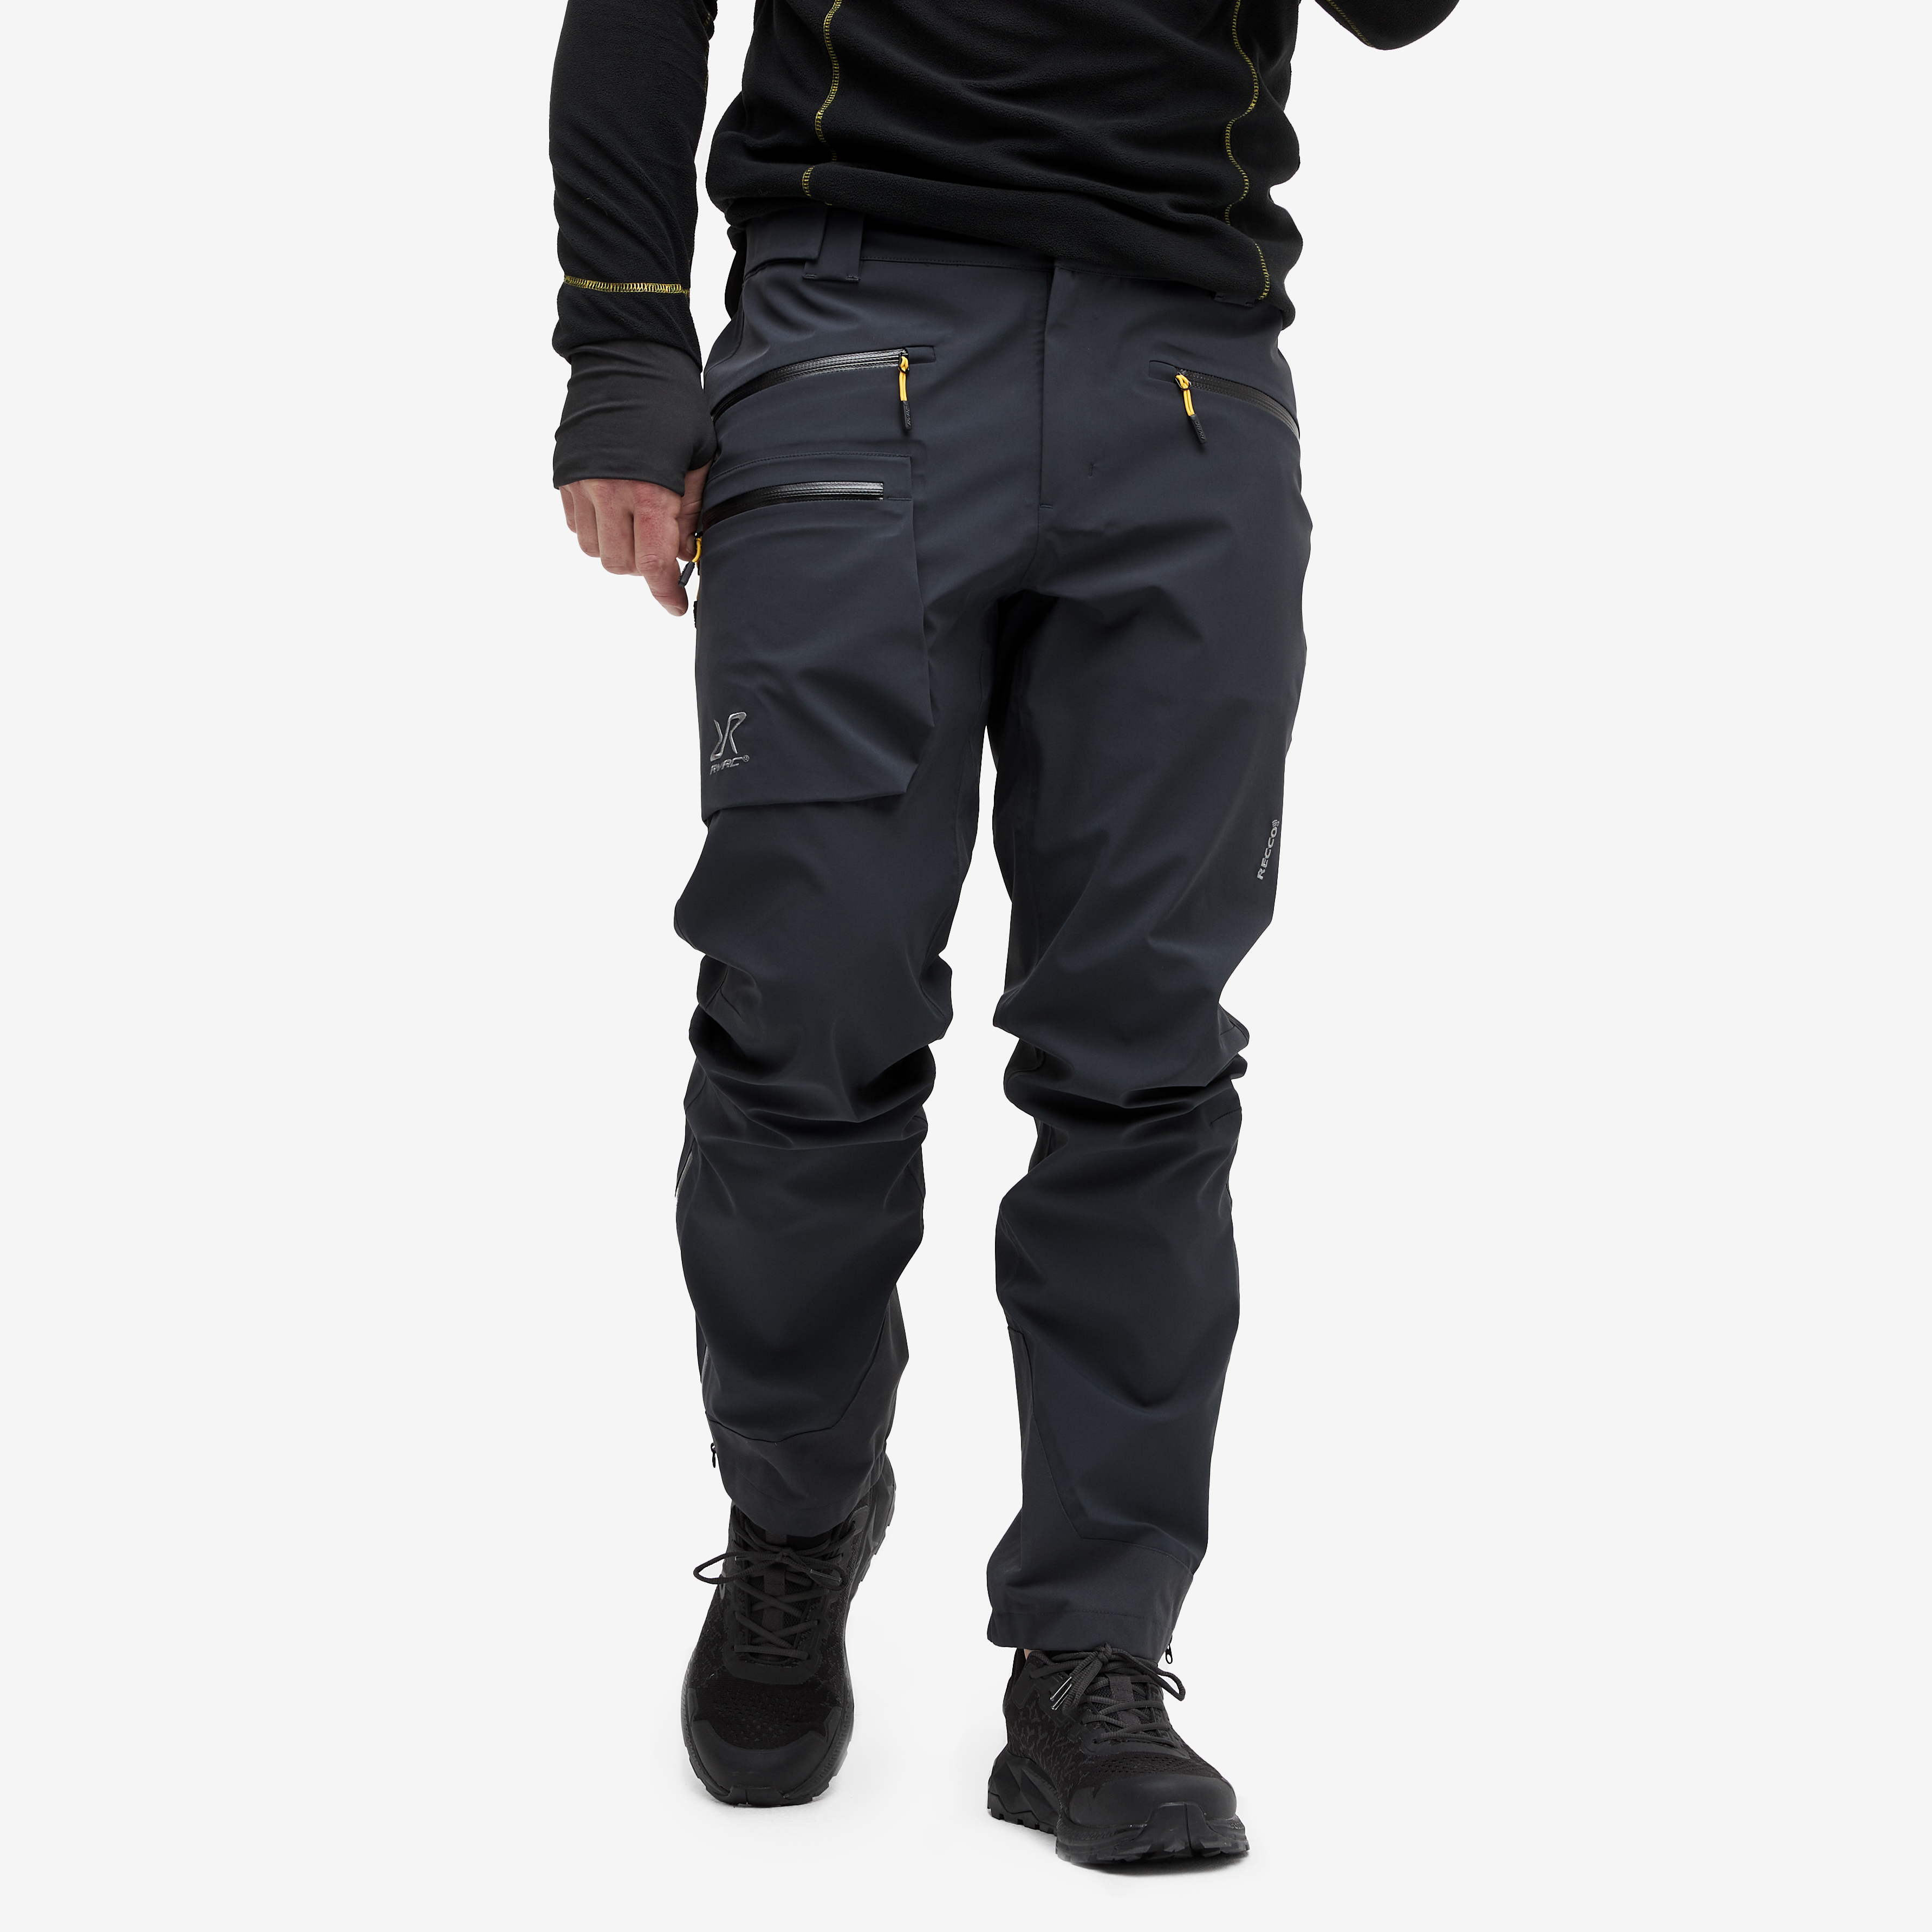 Aphex Pro Trousers Charcoal Black Men